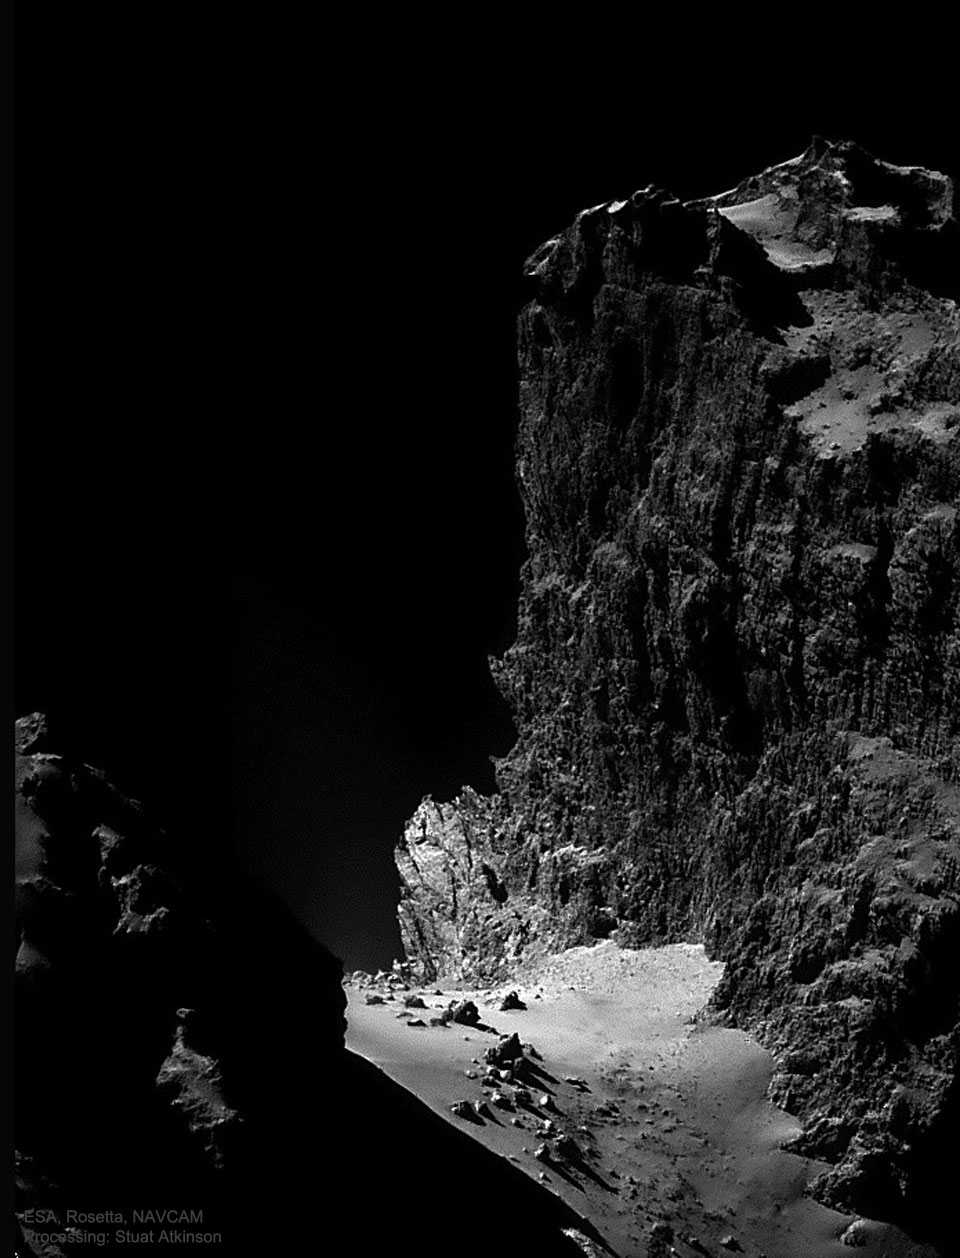 Zdjęcie pokazuje wysoki na kilometr klif powstały na Komecie Czuriumowa-Gierasimienko
(67P), sfotografowany przez należącą do ESA sondę Rosetta w 2014 r. Zobacz opis. Po kliknięciu na obrazek załaduje się wersja
 o największej dostępnej rozdzielczości.